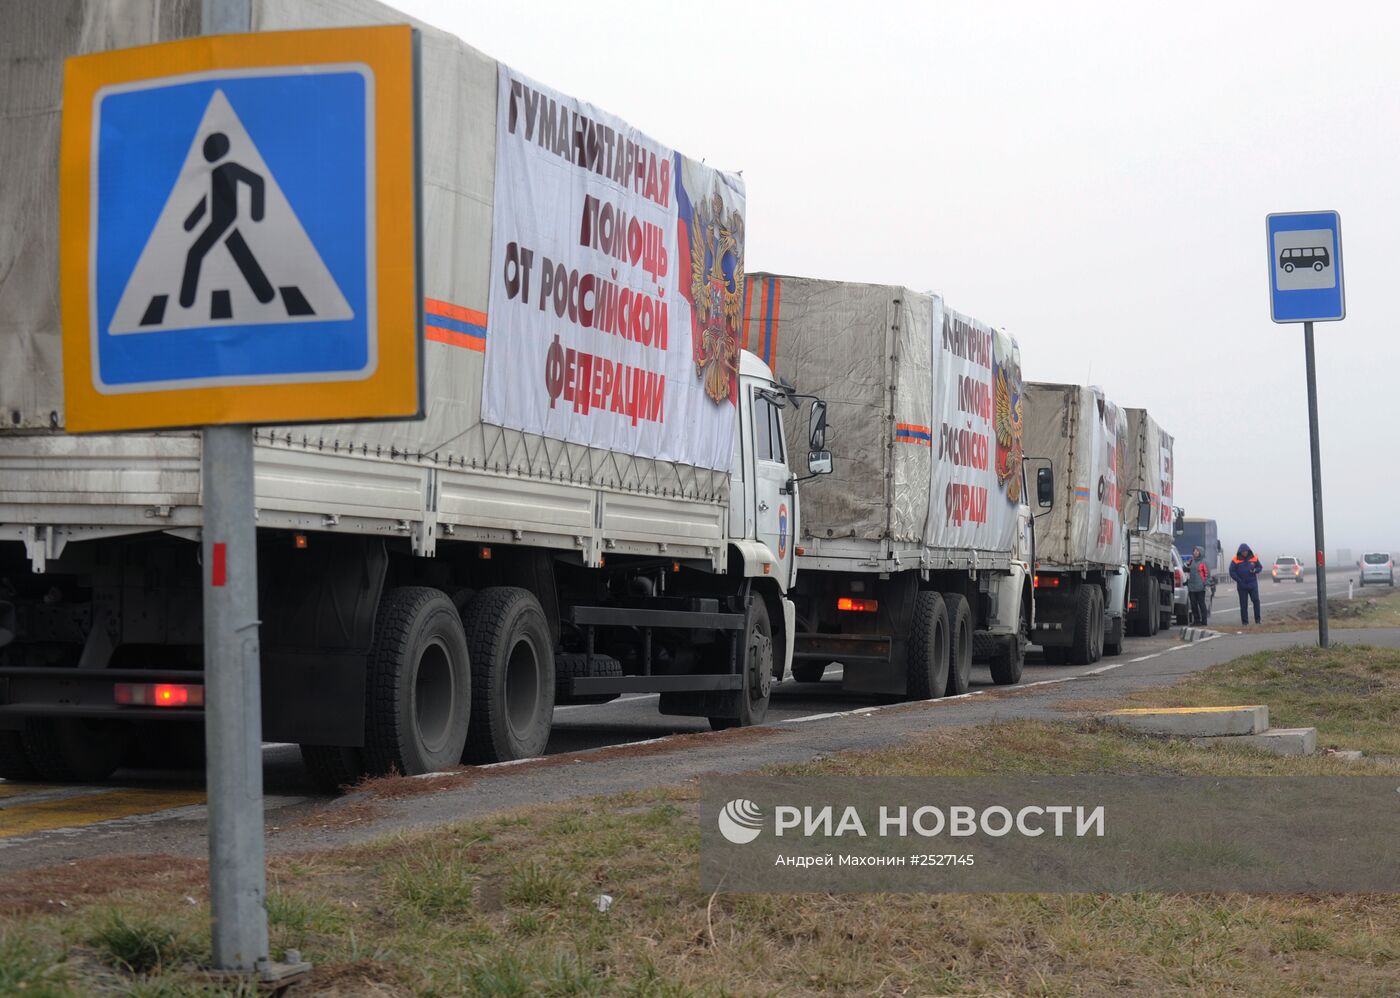 Седьмой гуманитарный конвой для Донбасса